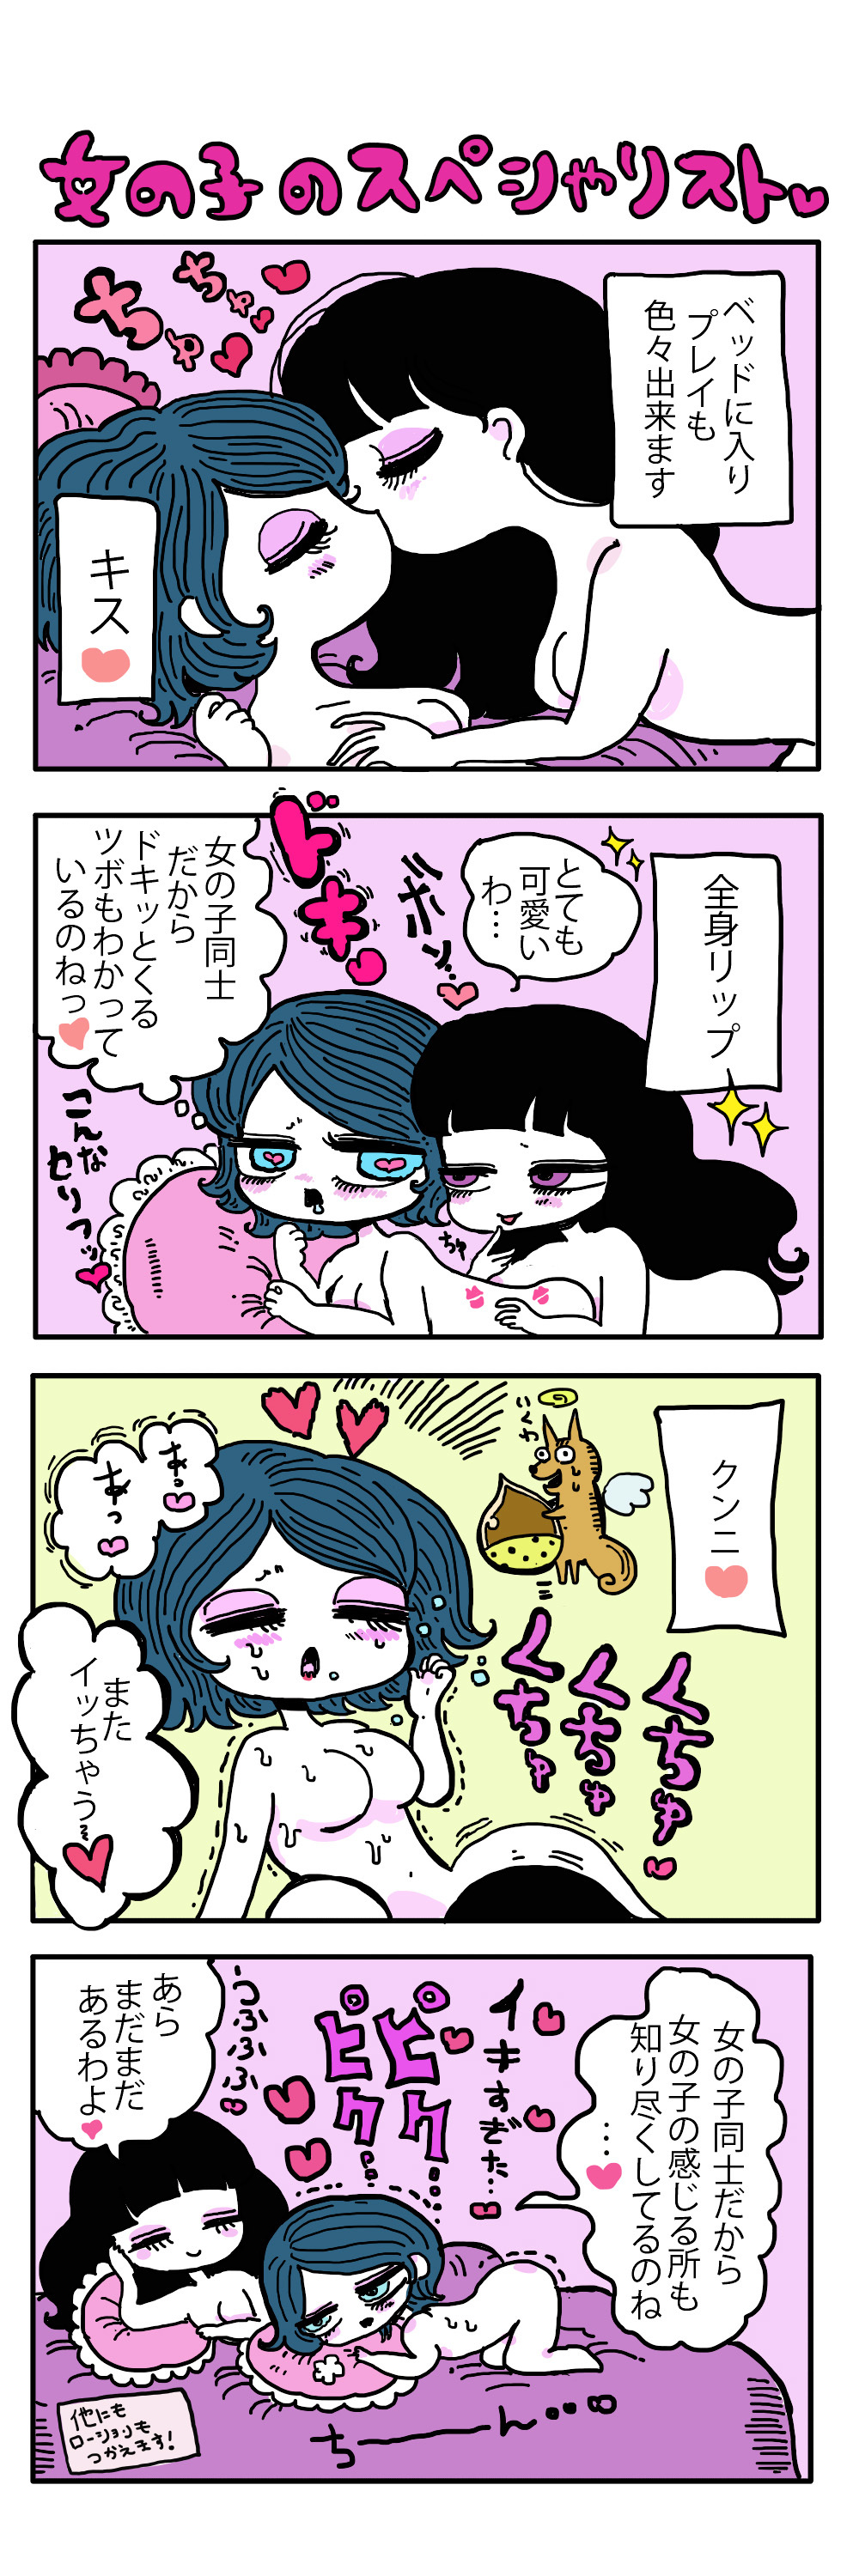 レズビアン東京 漫画1